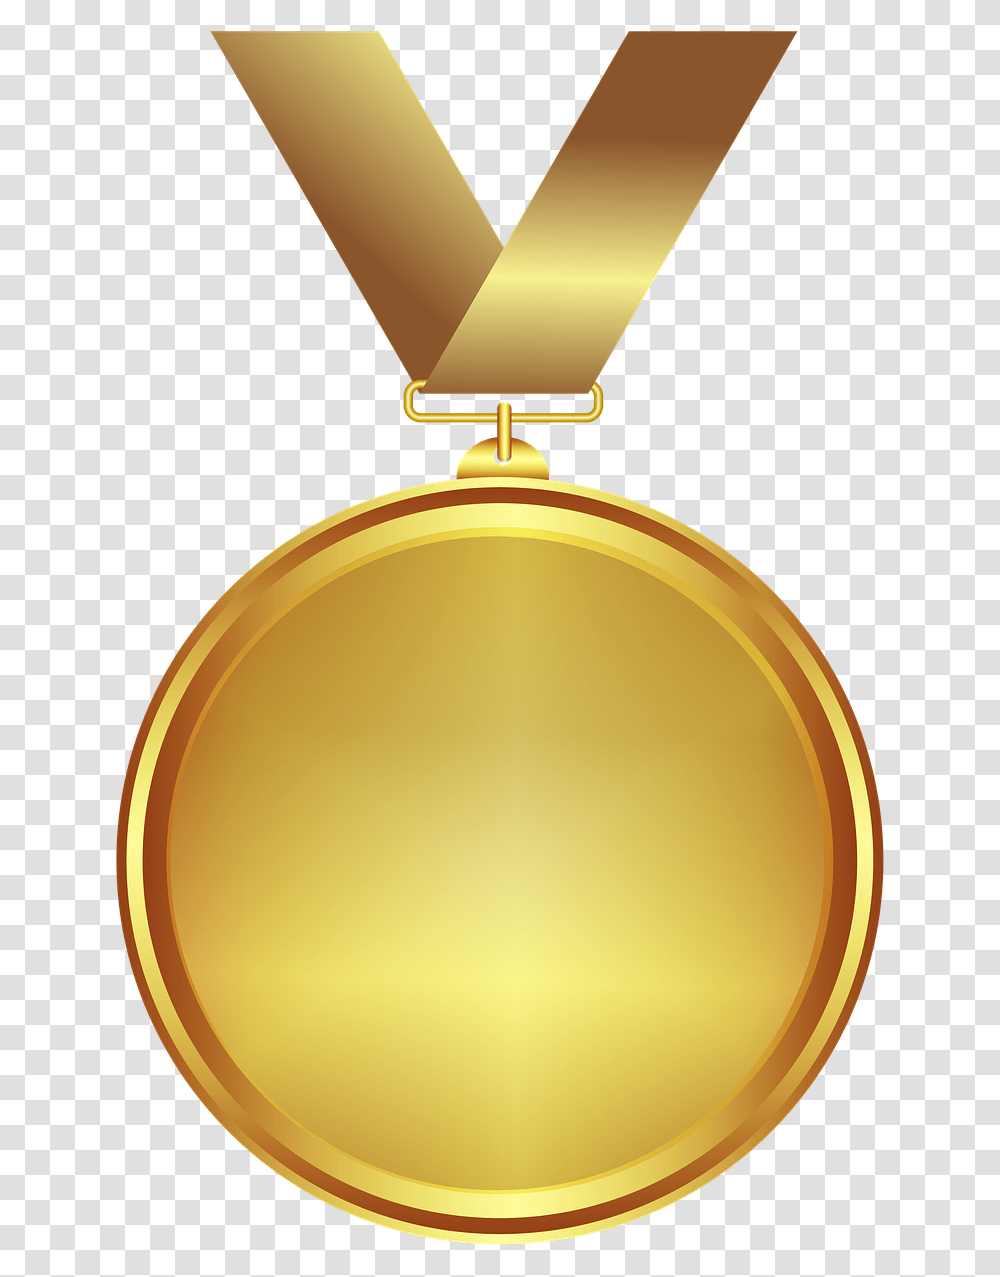 Medal Gold Design Gold Medal, Lamp, Trophy Transparent Png